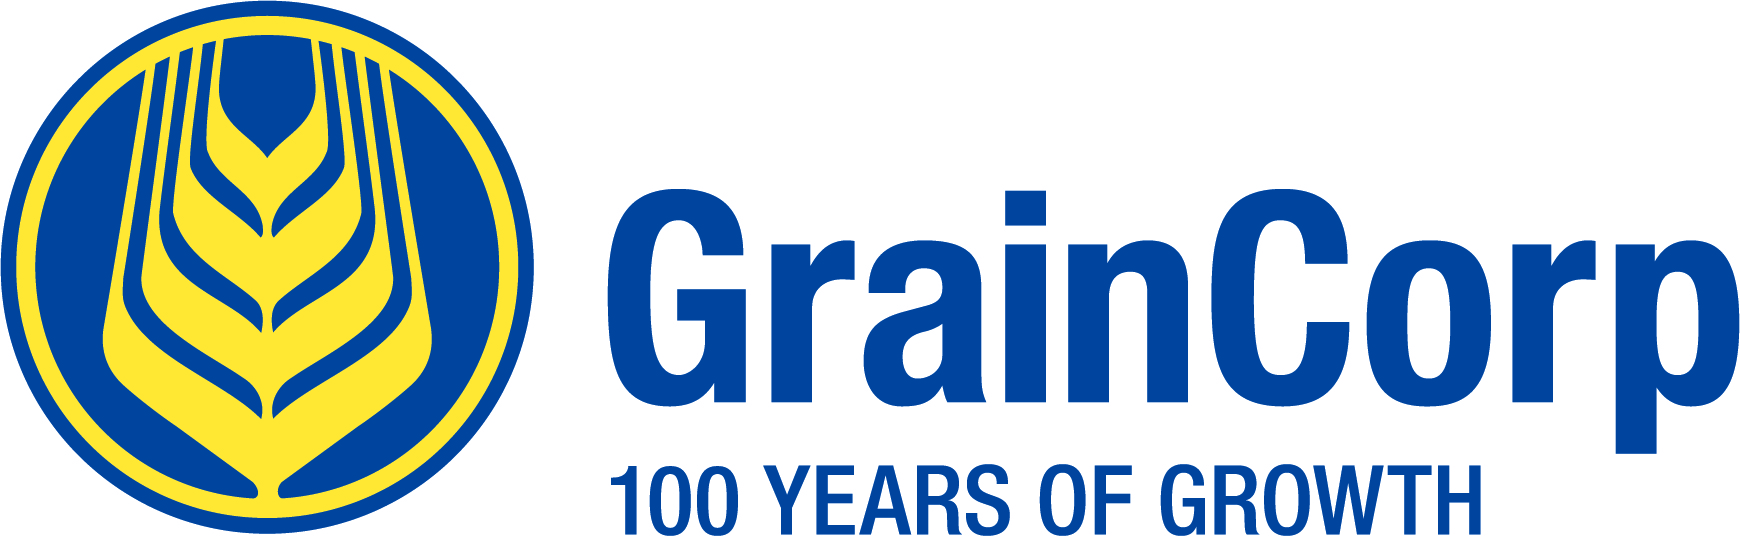 GrainCorp Mobile Equipment Assessment v10 .1